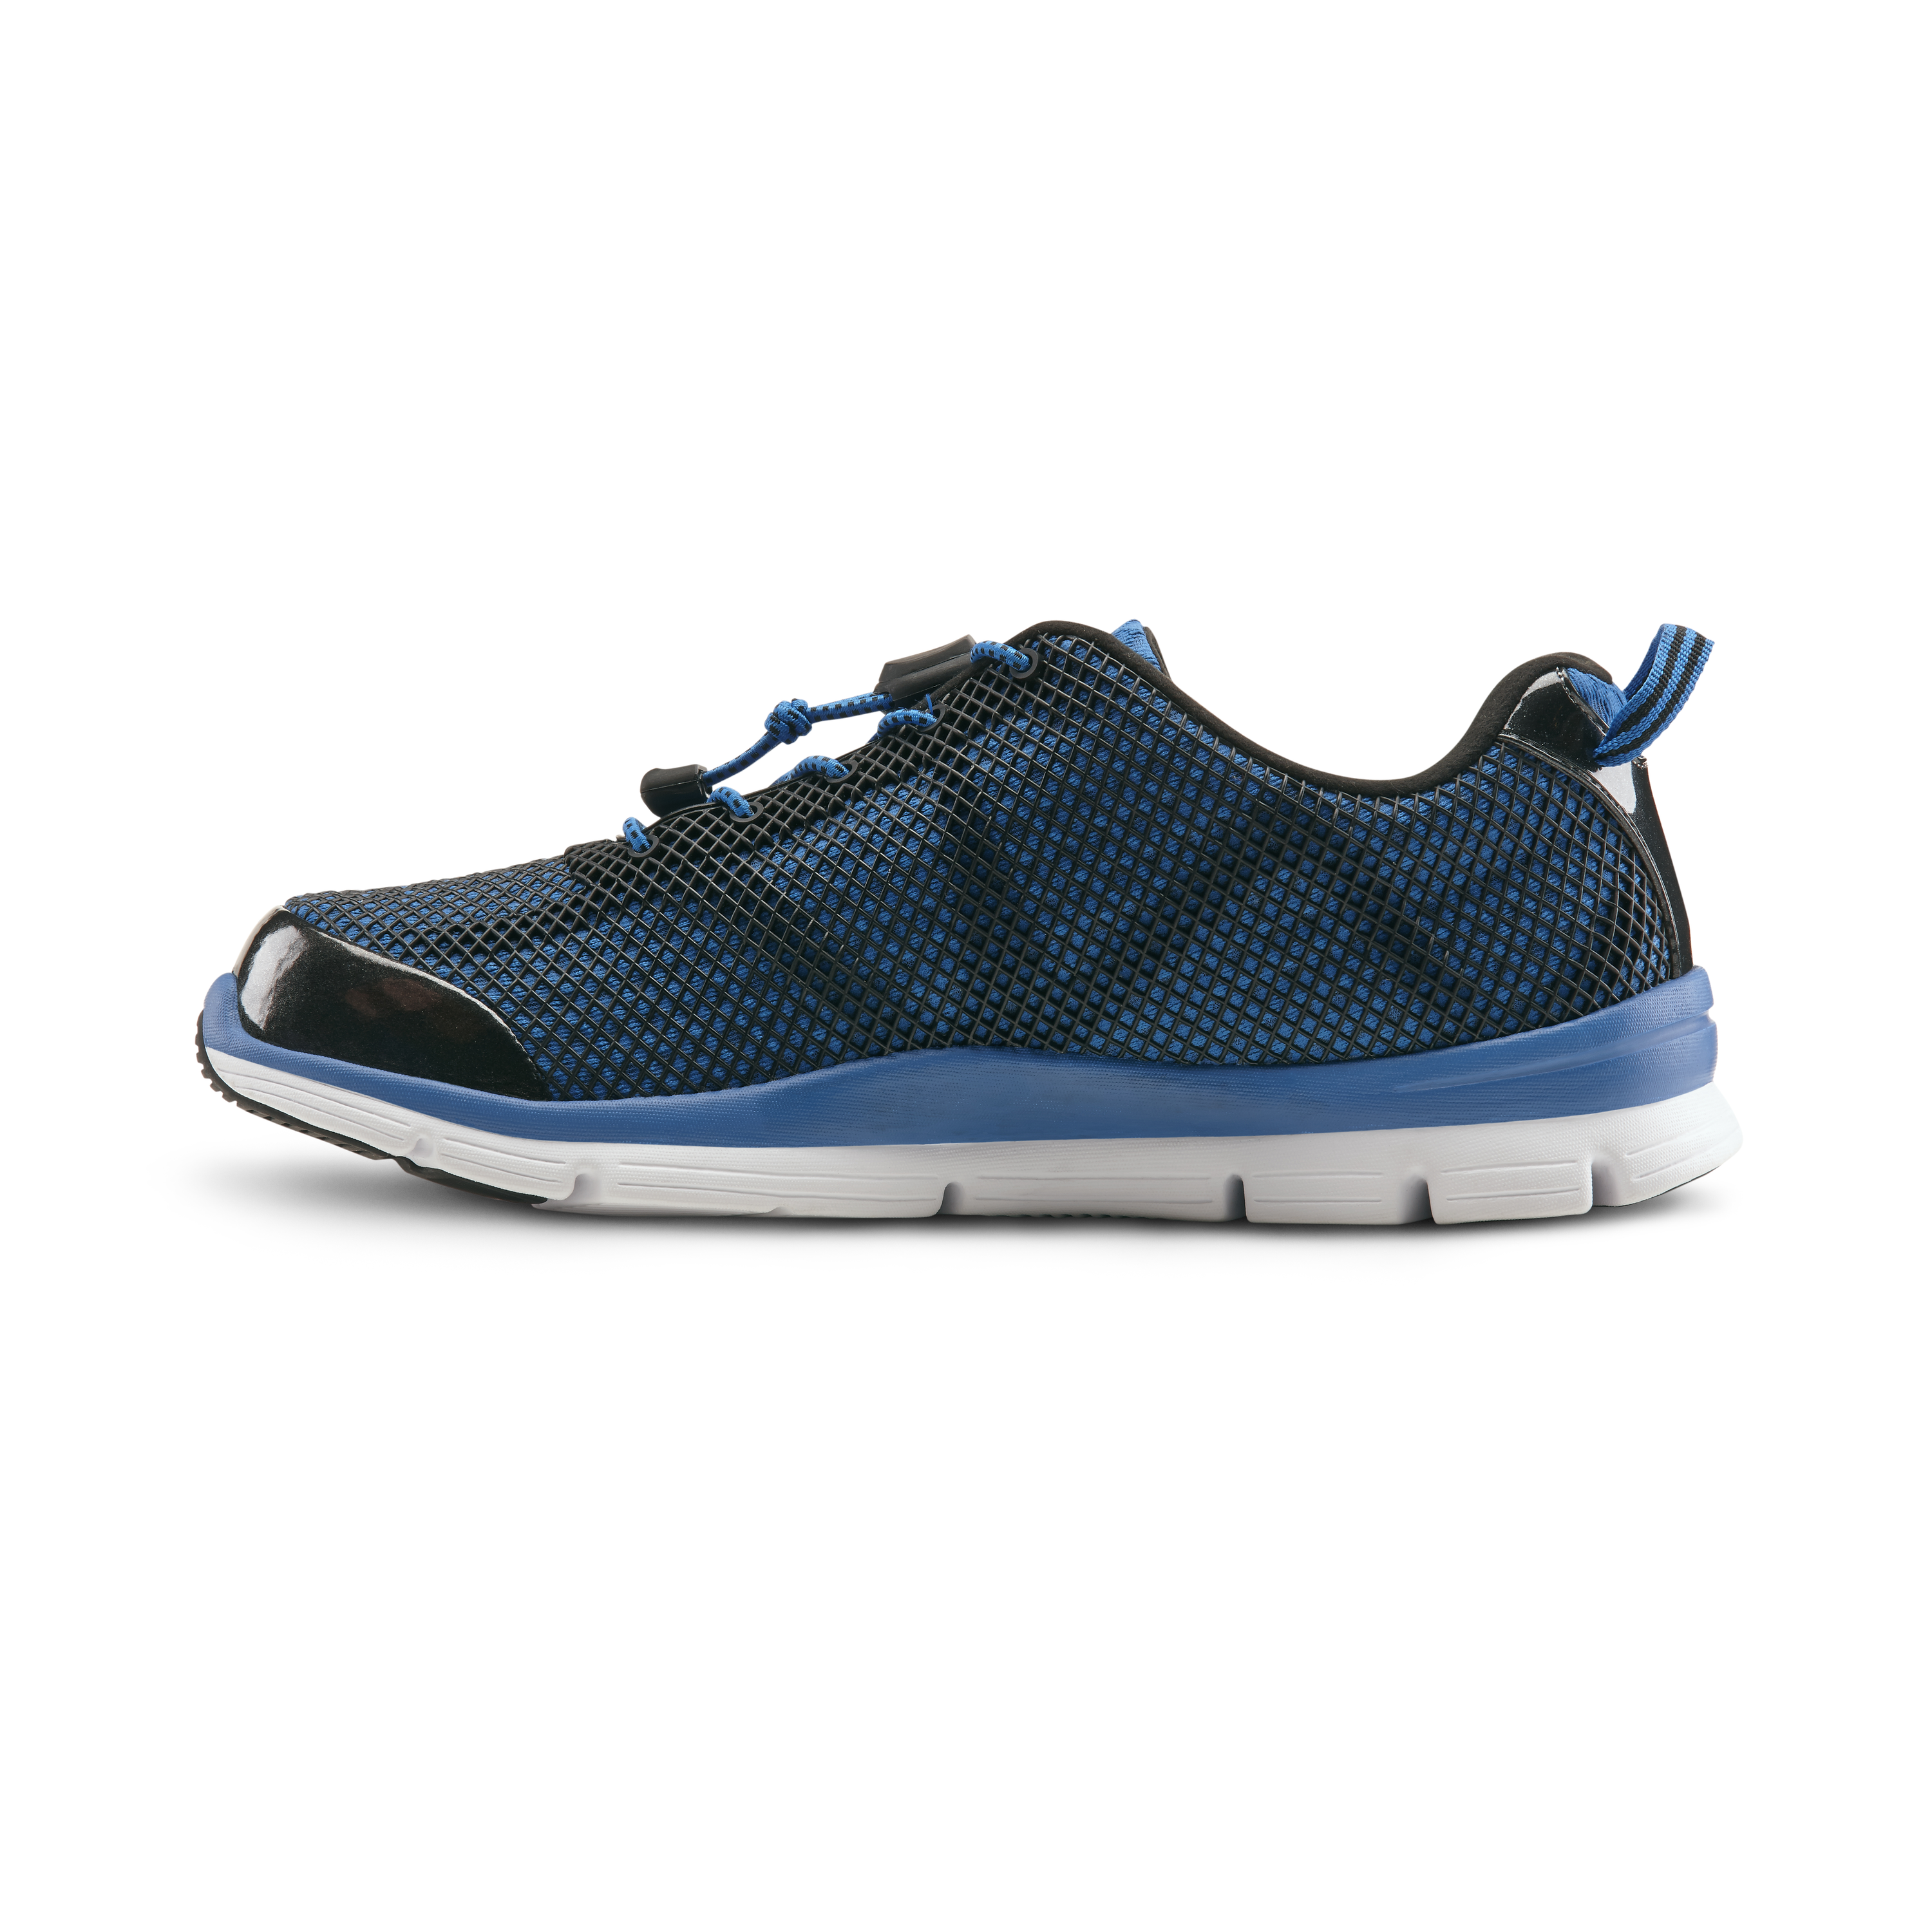 Zusatzbild DR. COMFORT® Jason blau, innen, Orthopädische Schuhe, Besonders weicher und leichter Freizeit- und Aktivschuh